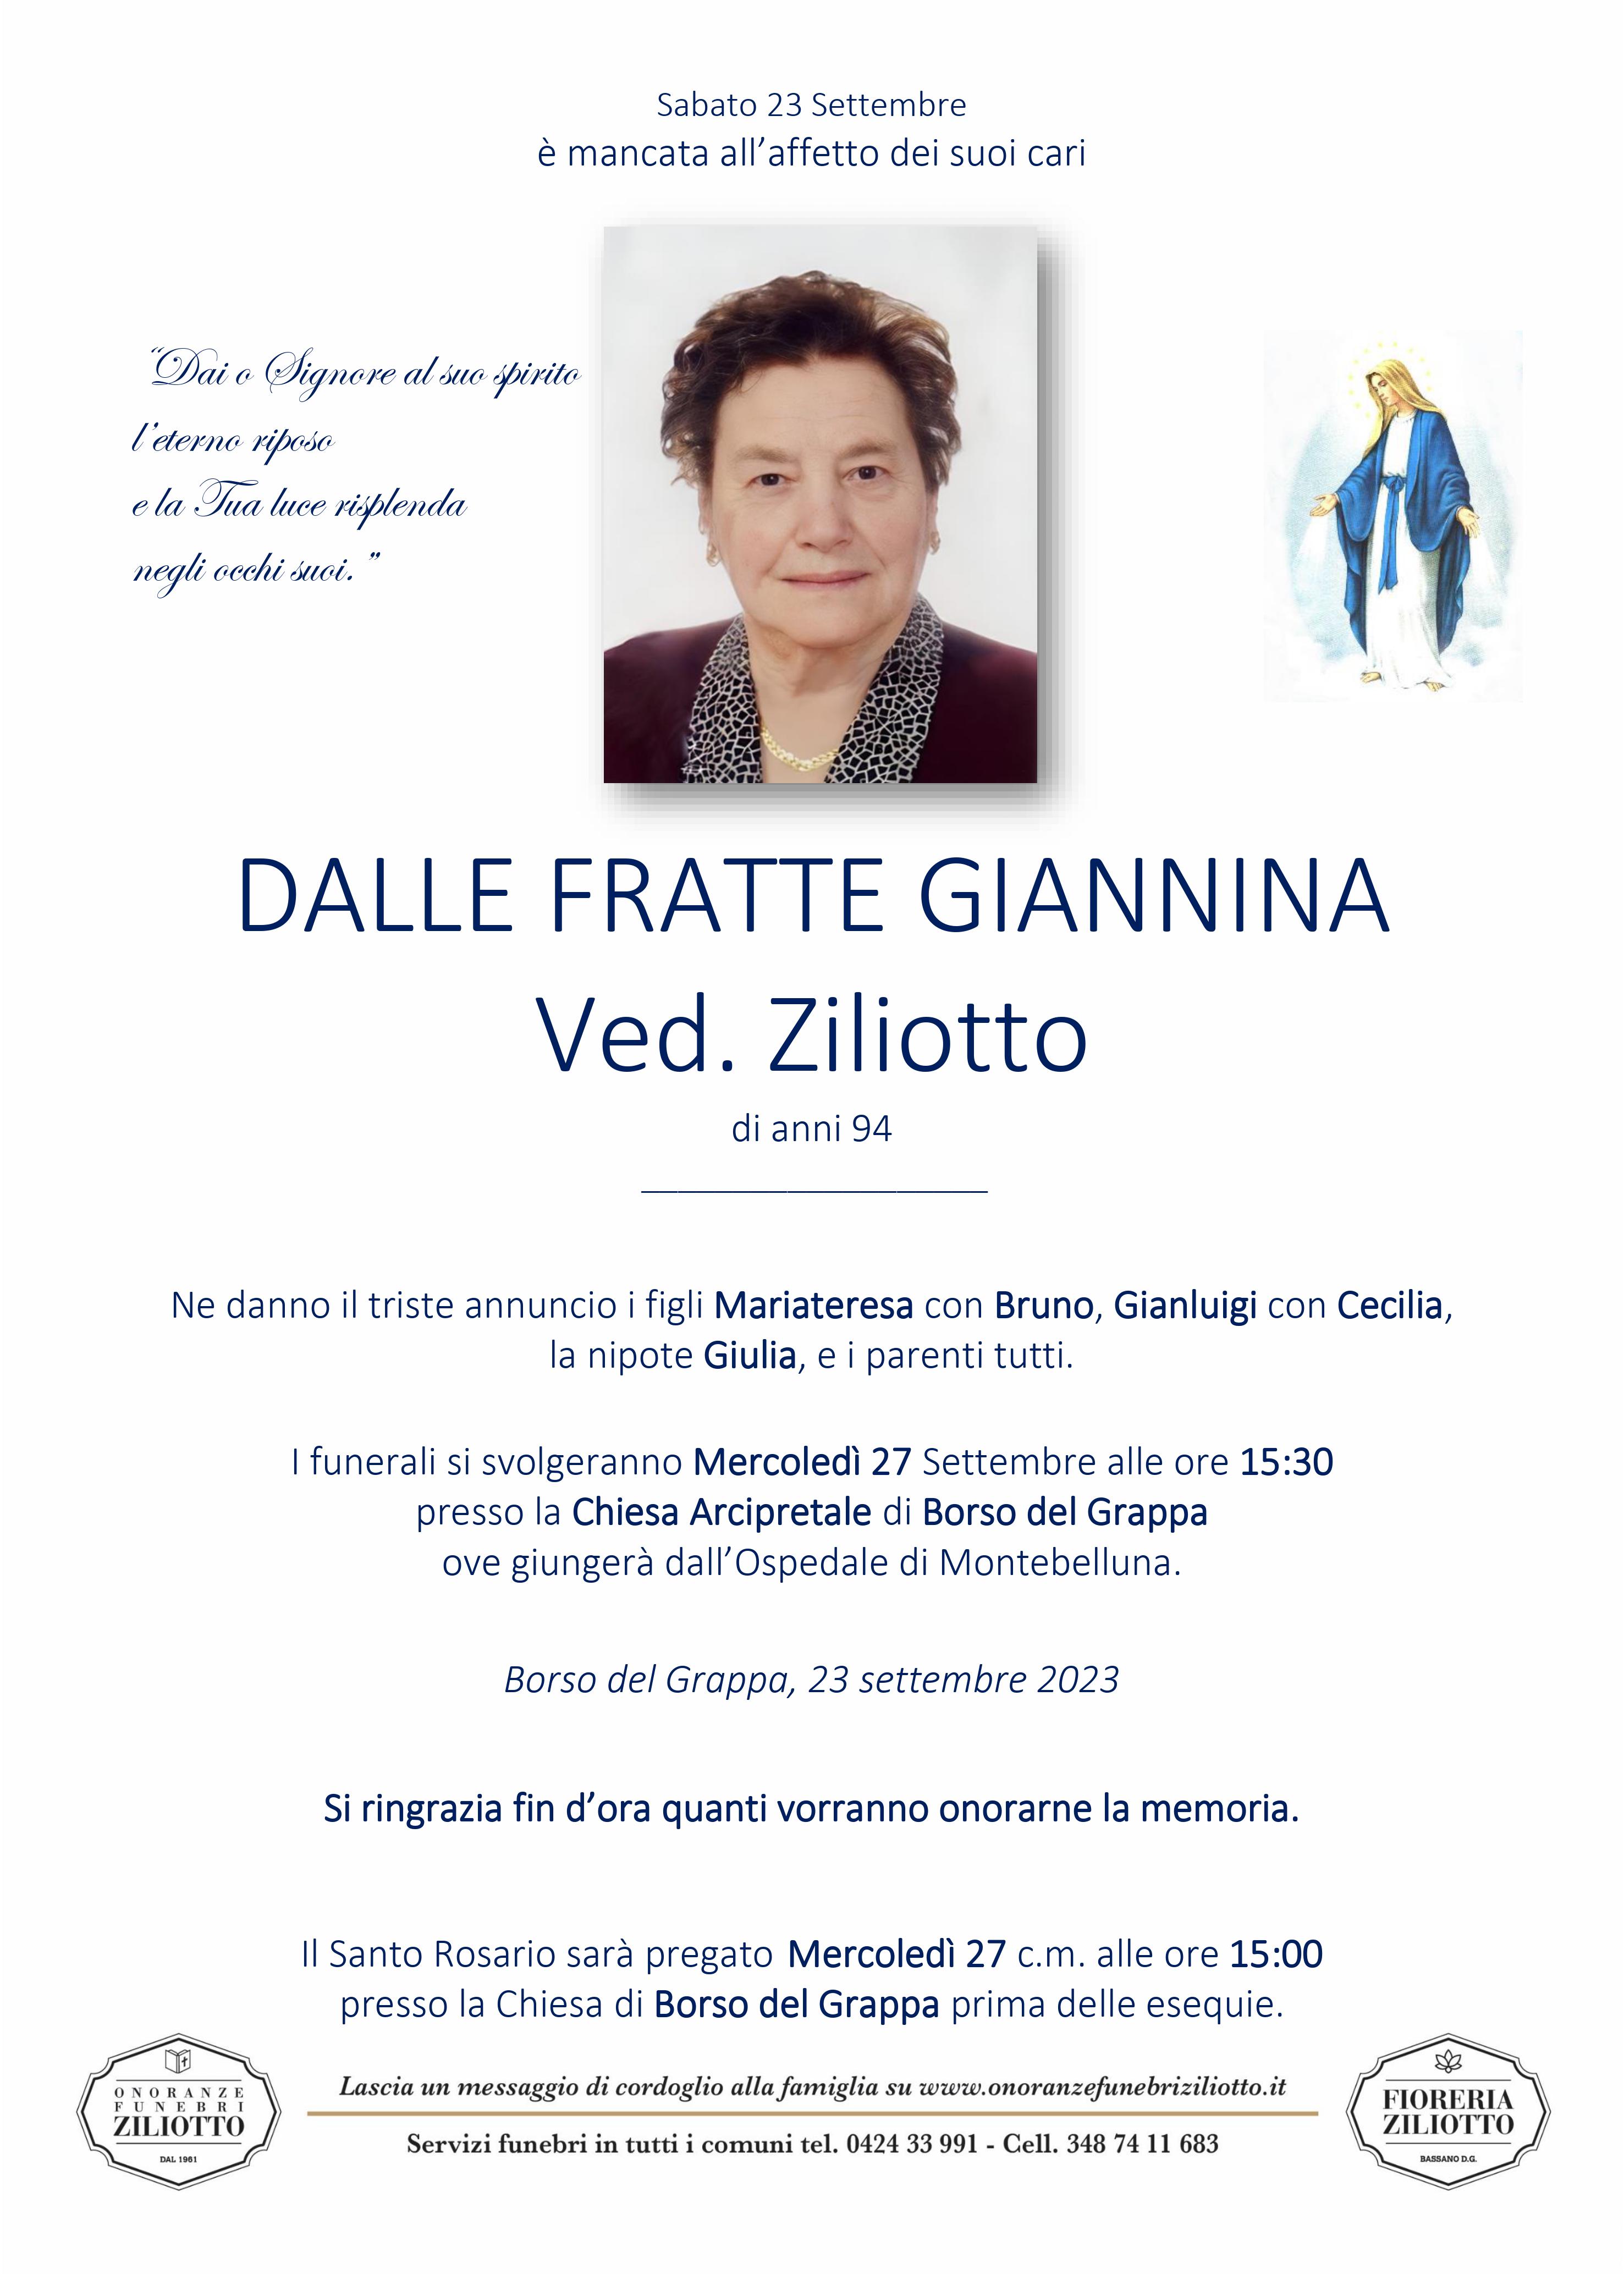 Giannina Dalle Fratte - 94 anni - Borso del Grappa